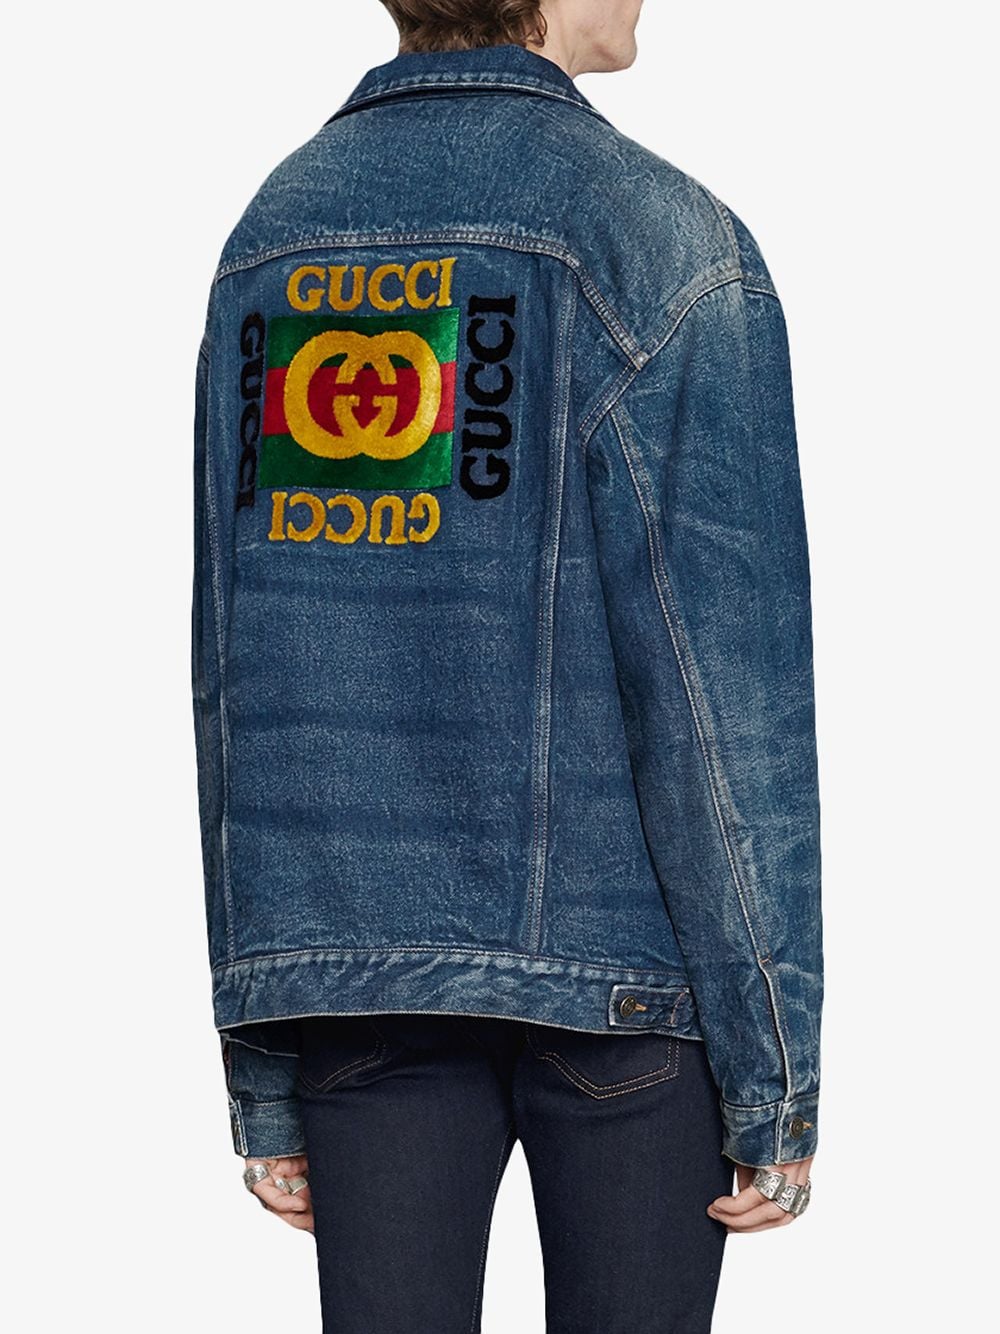 фото Gucci джинсовая куртка в стиле оверсайз с нашивками